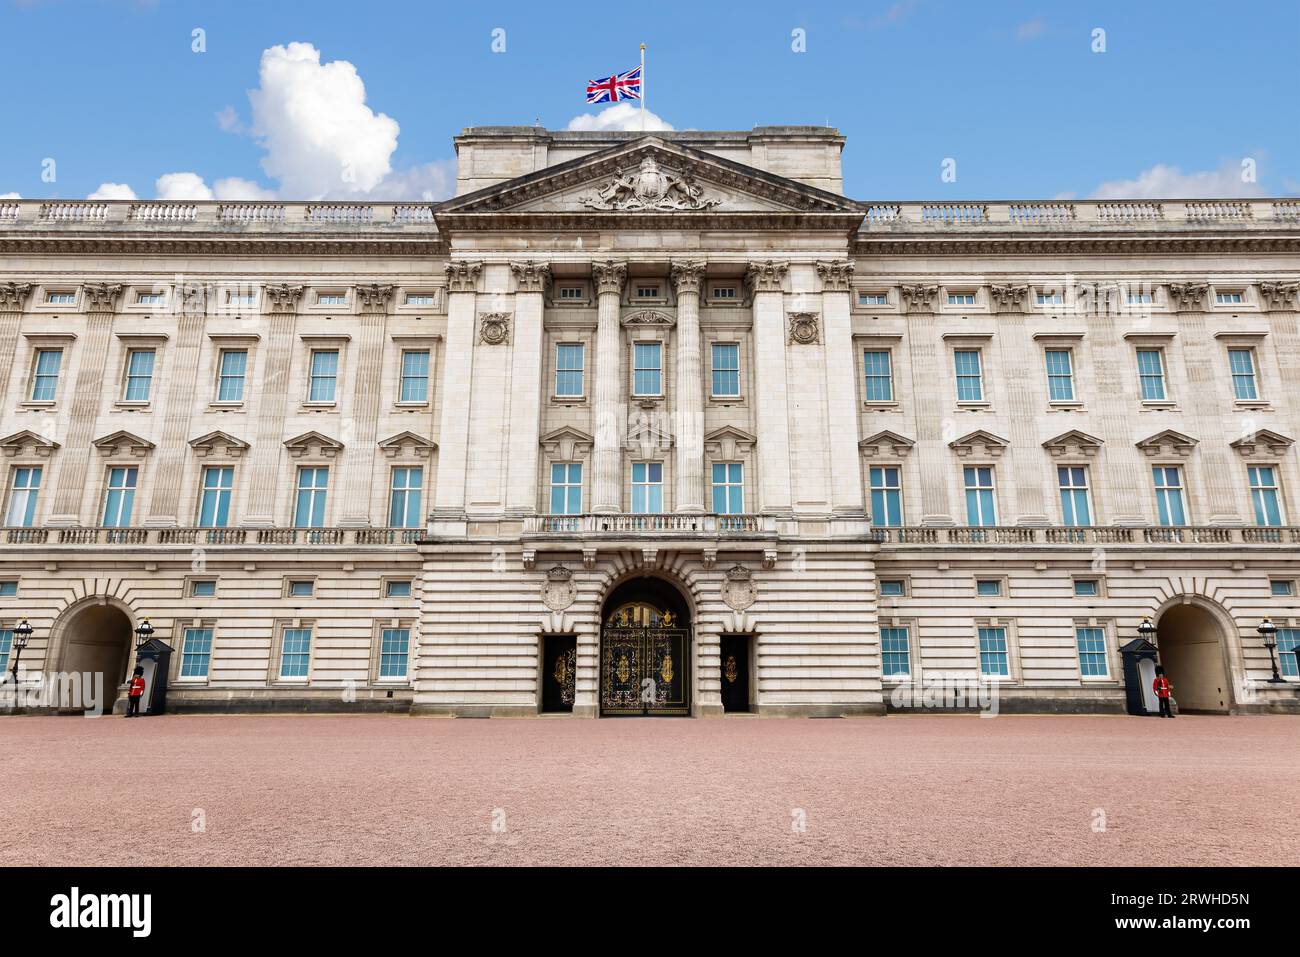 Fachada del palacio de Buckingham, residencia real en Londres y la sede administrativa del monarca del Reino Unido, en Londres Foto de stock